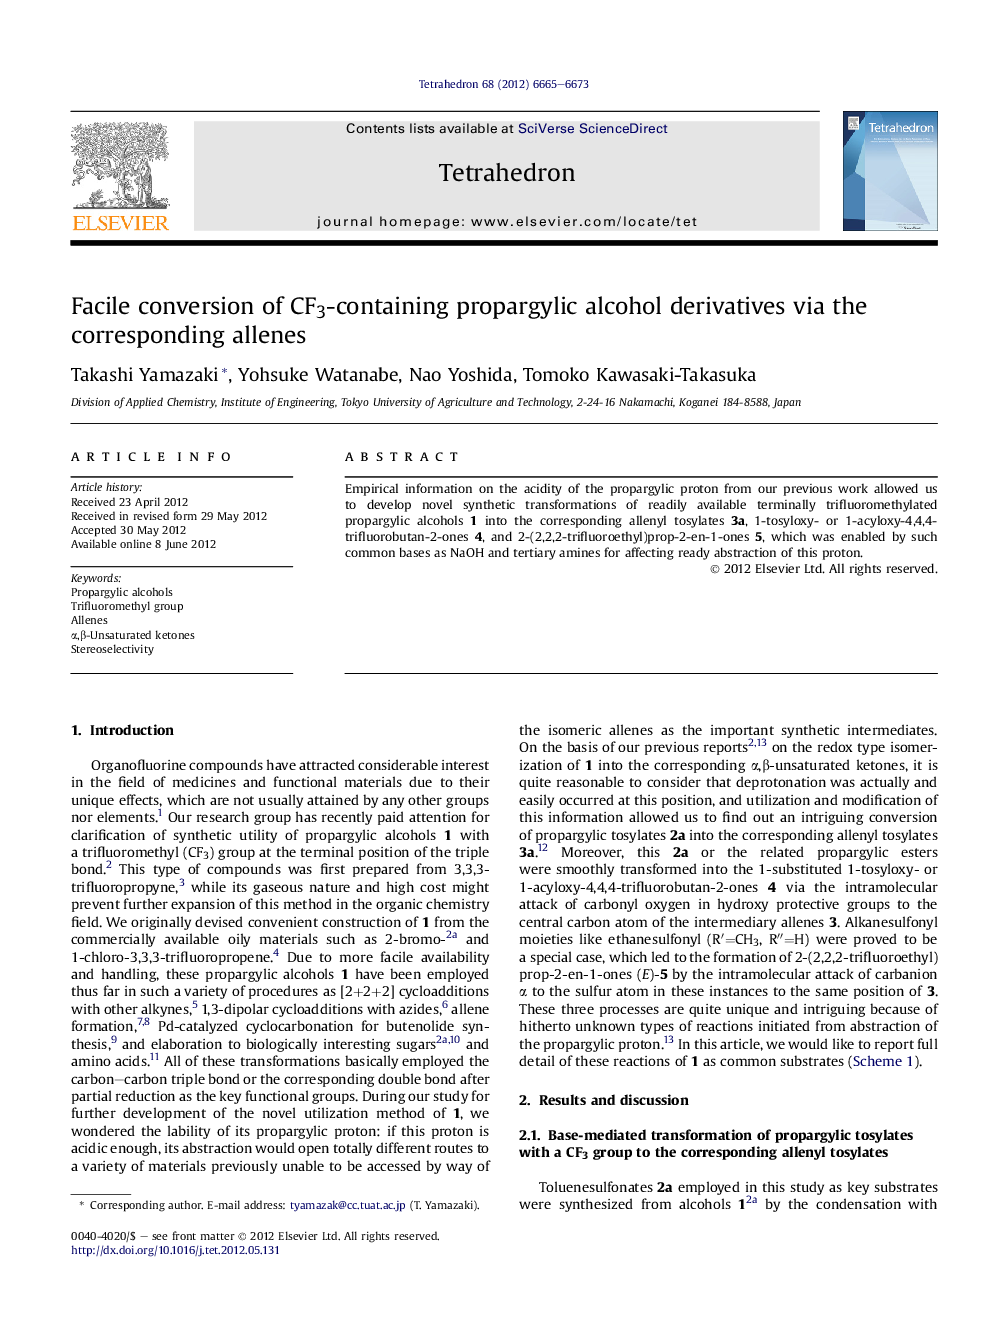 Facile conversion of CF3-containing propargylic alcohol derivatives via the corresponding allenes